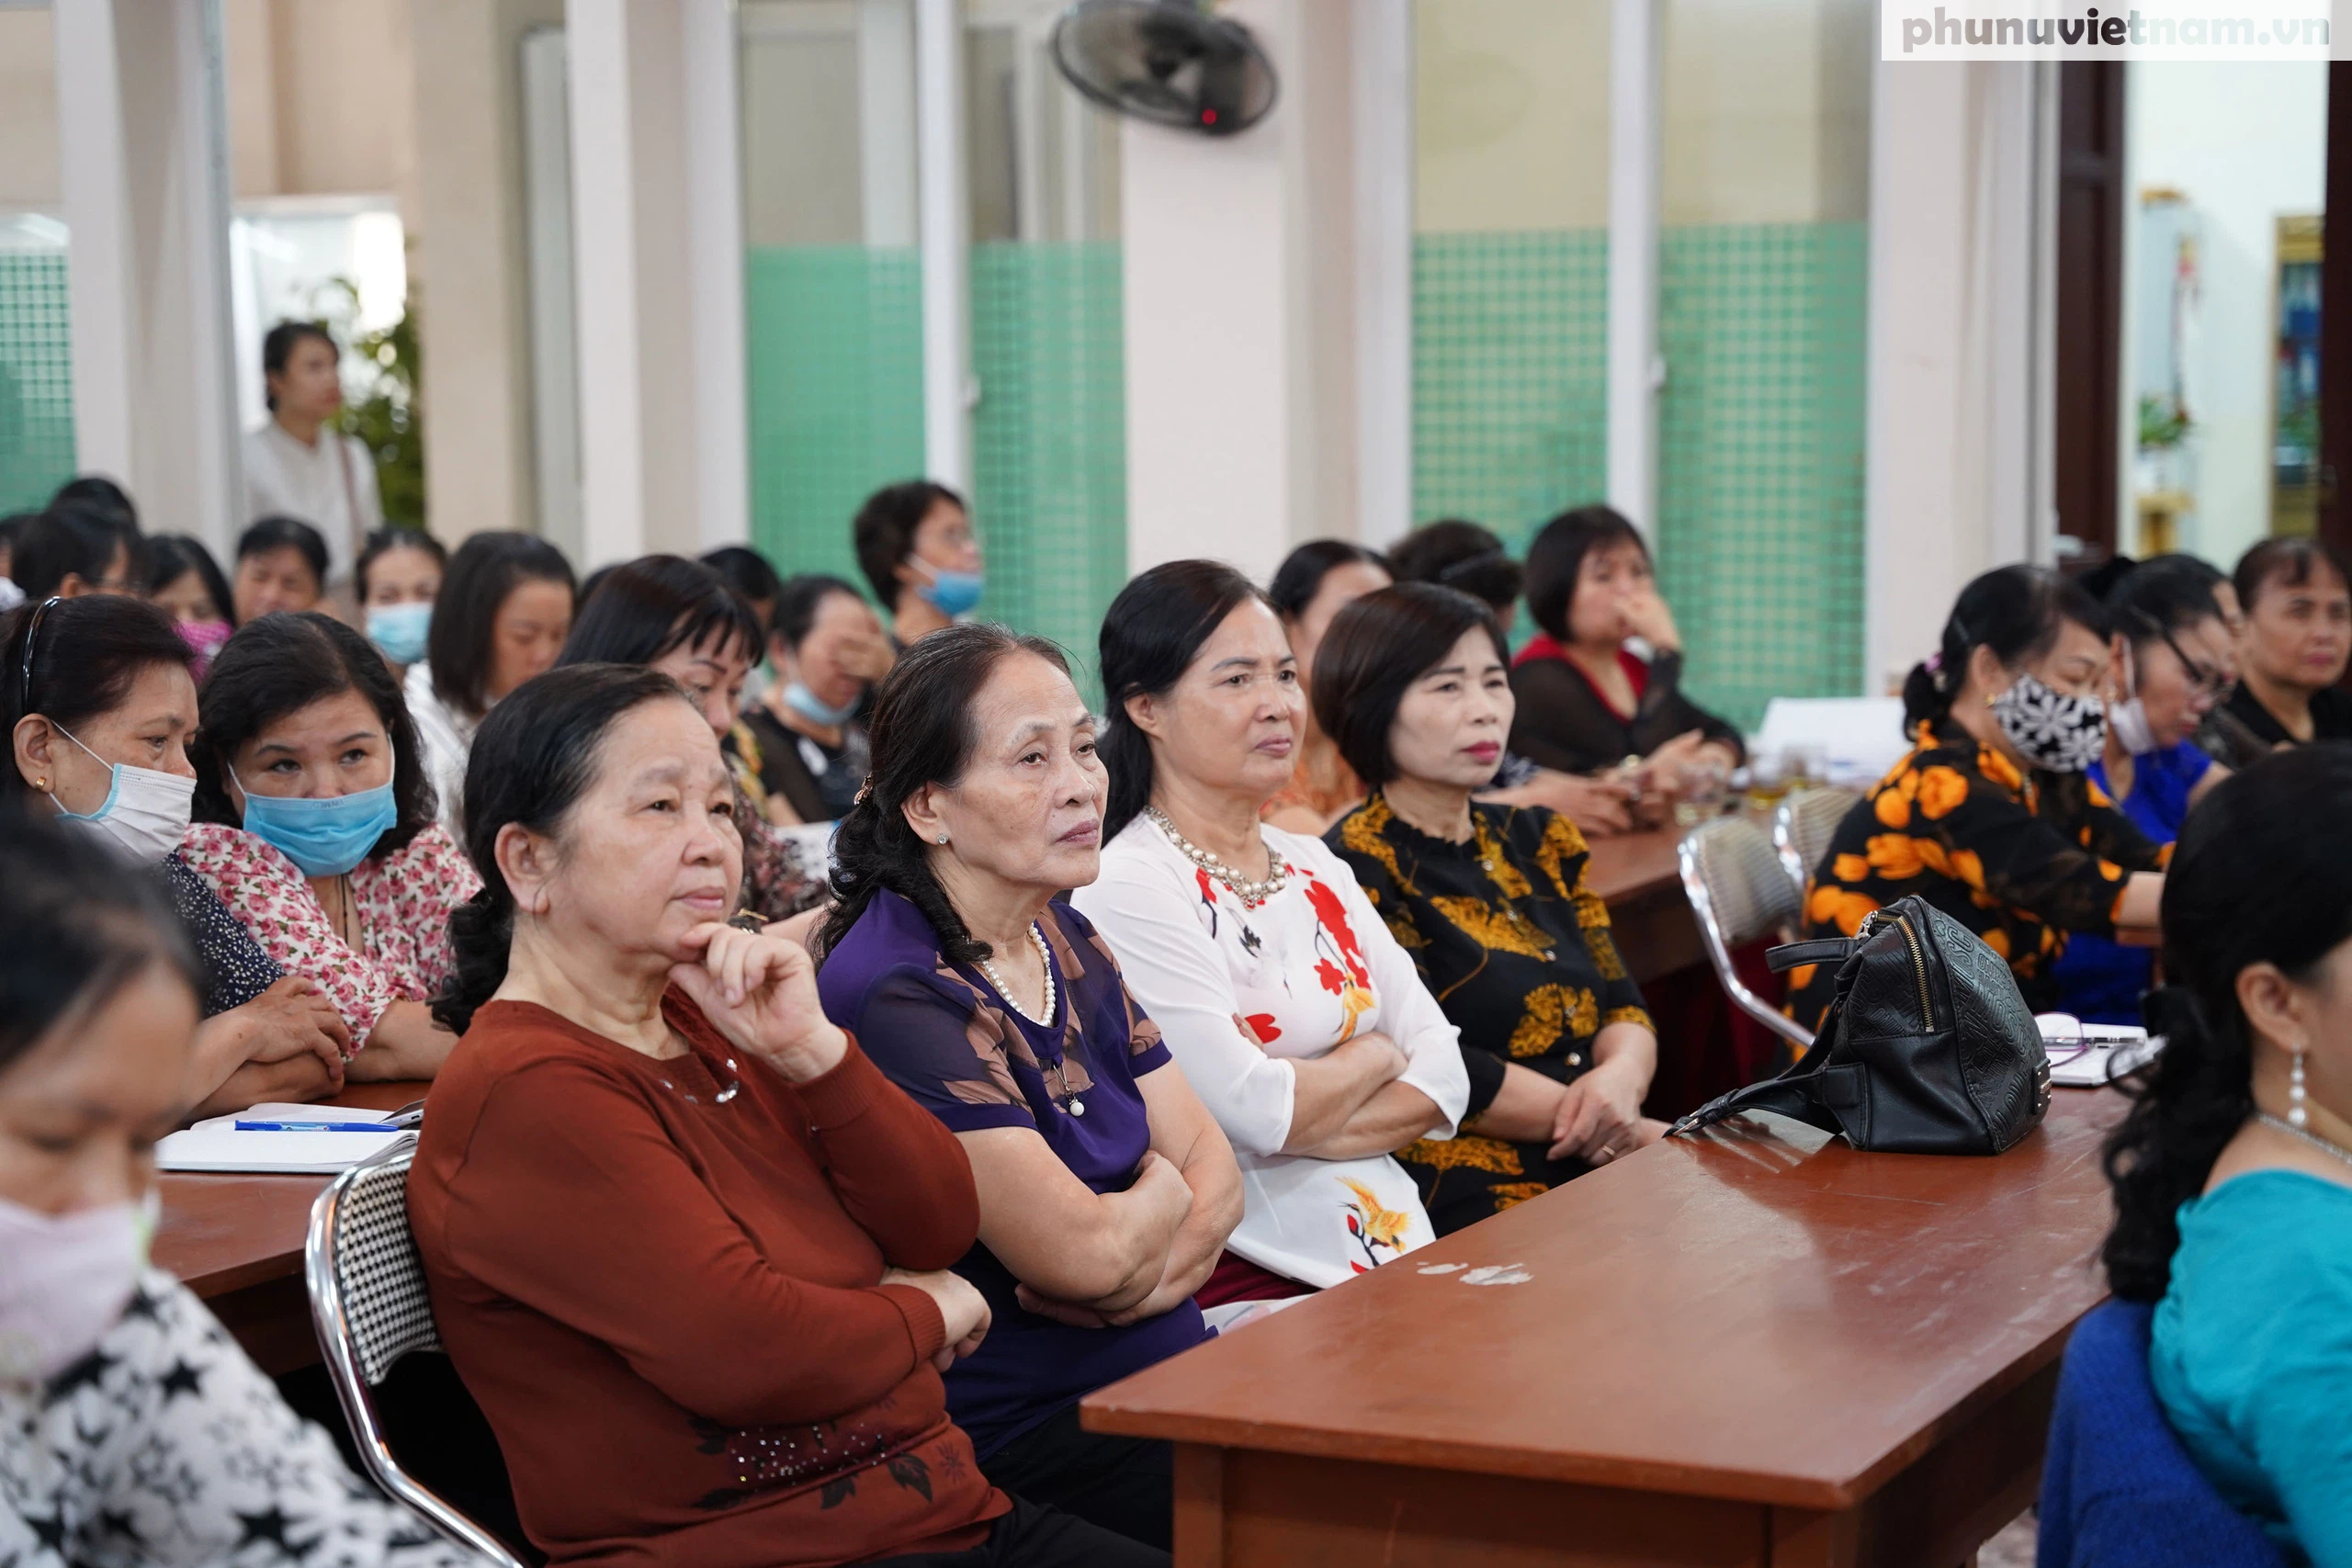 Biểu dương các chi hội trưởng, tổ trưởng phụ nữ tiêu biểu trong hỗ trợ phụ nữ khởi nghiệp ở Hải Phòng - Ảnh 2.